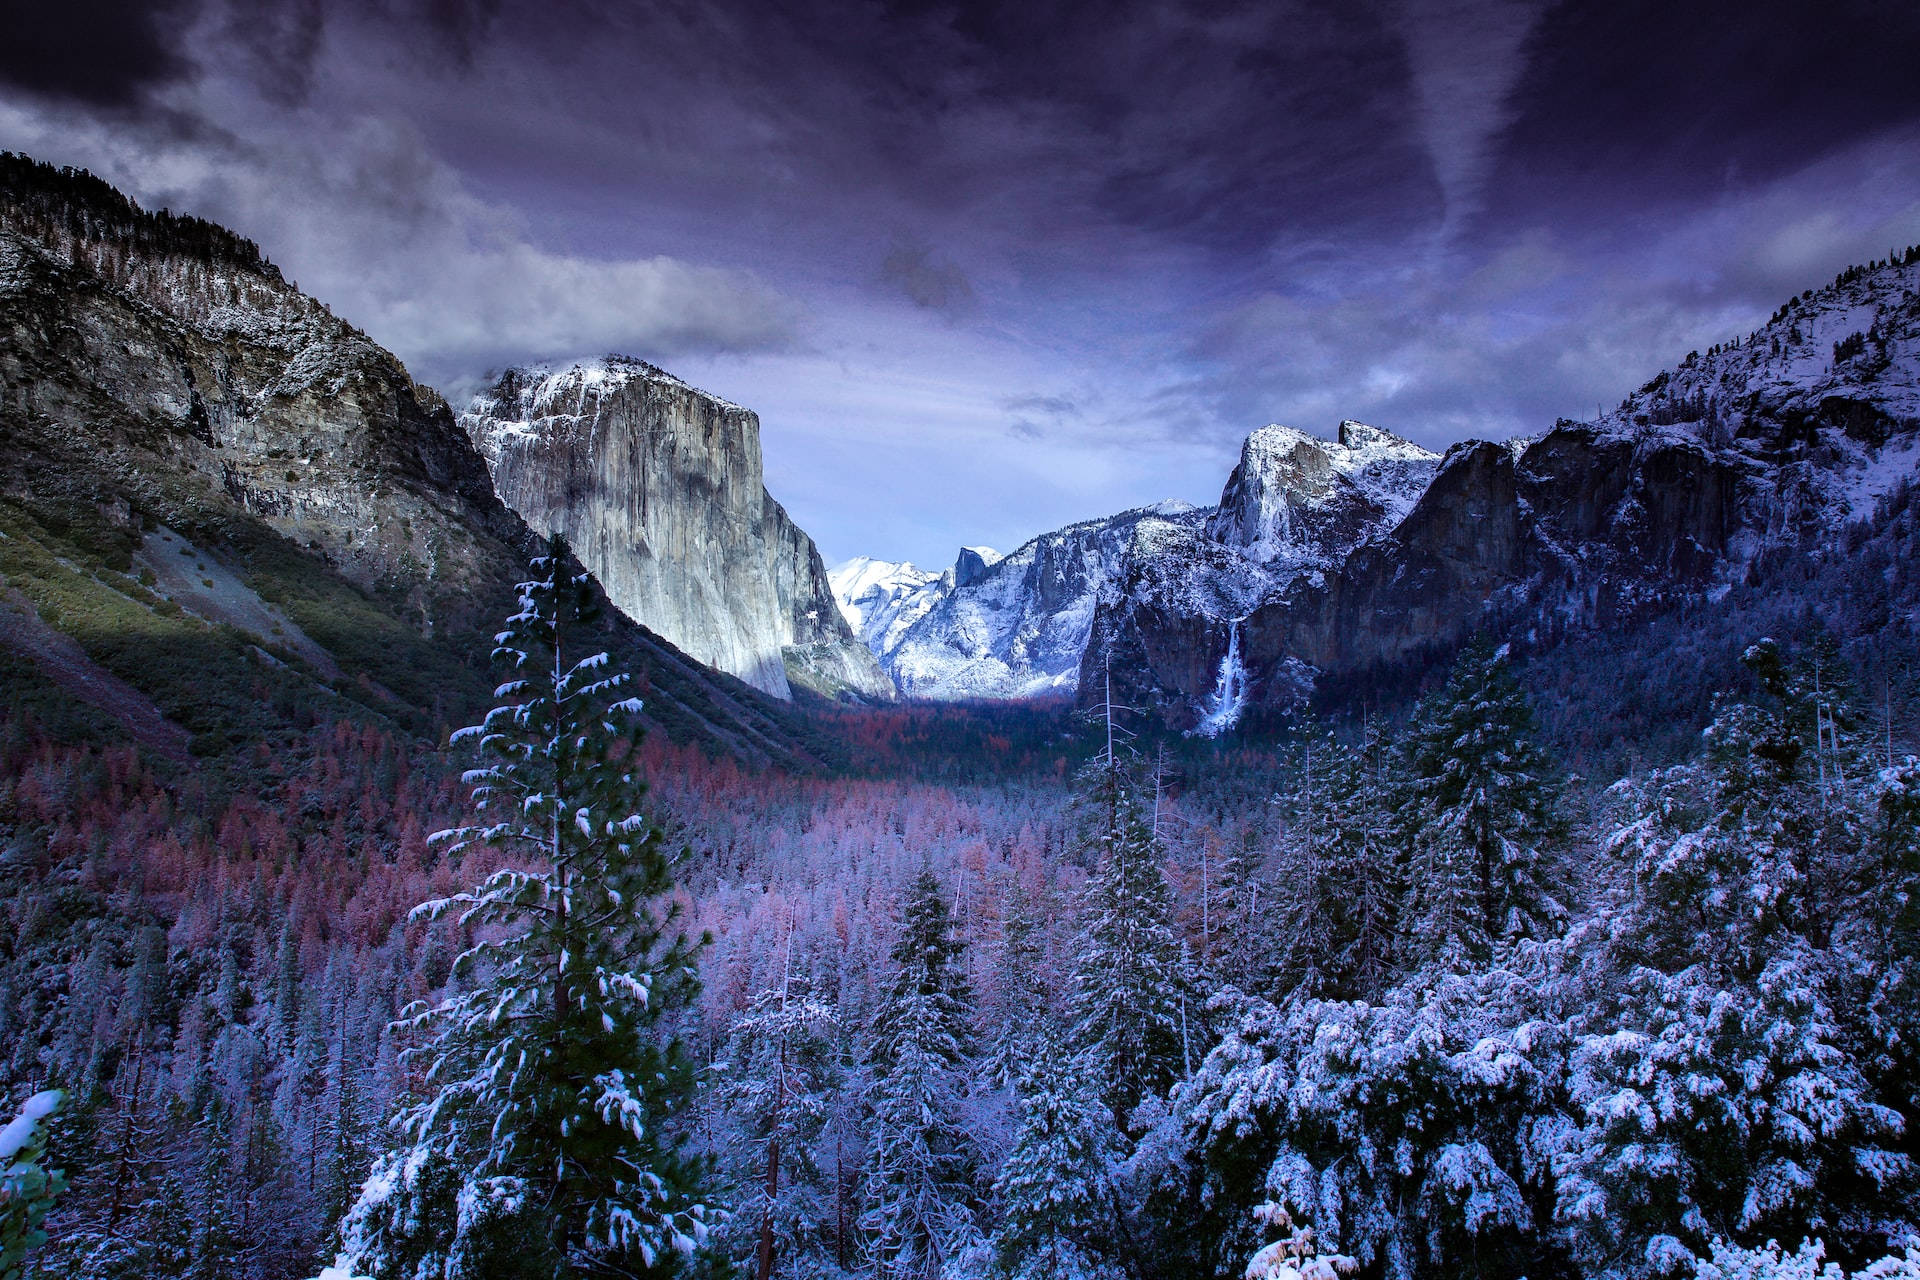 Macbookcon Imagen De Las Montañas De Yosemite. Fondo de pantalla